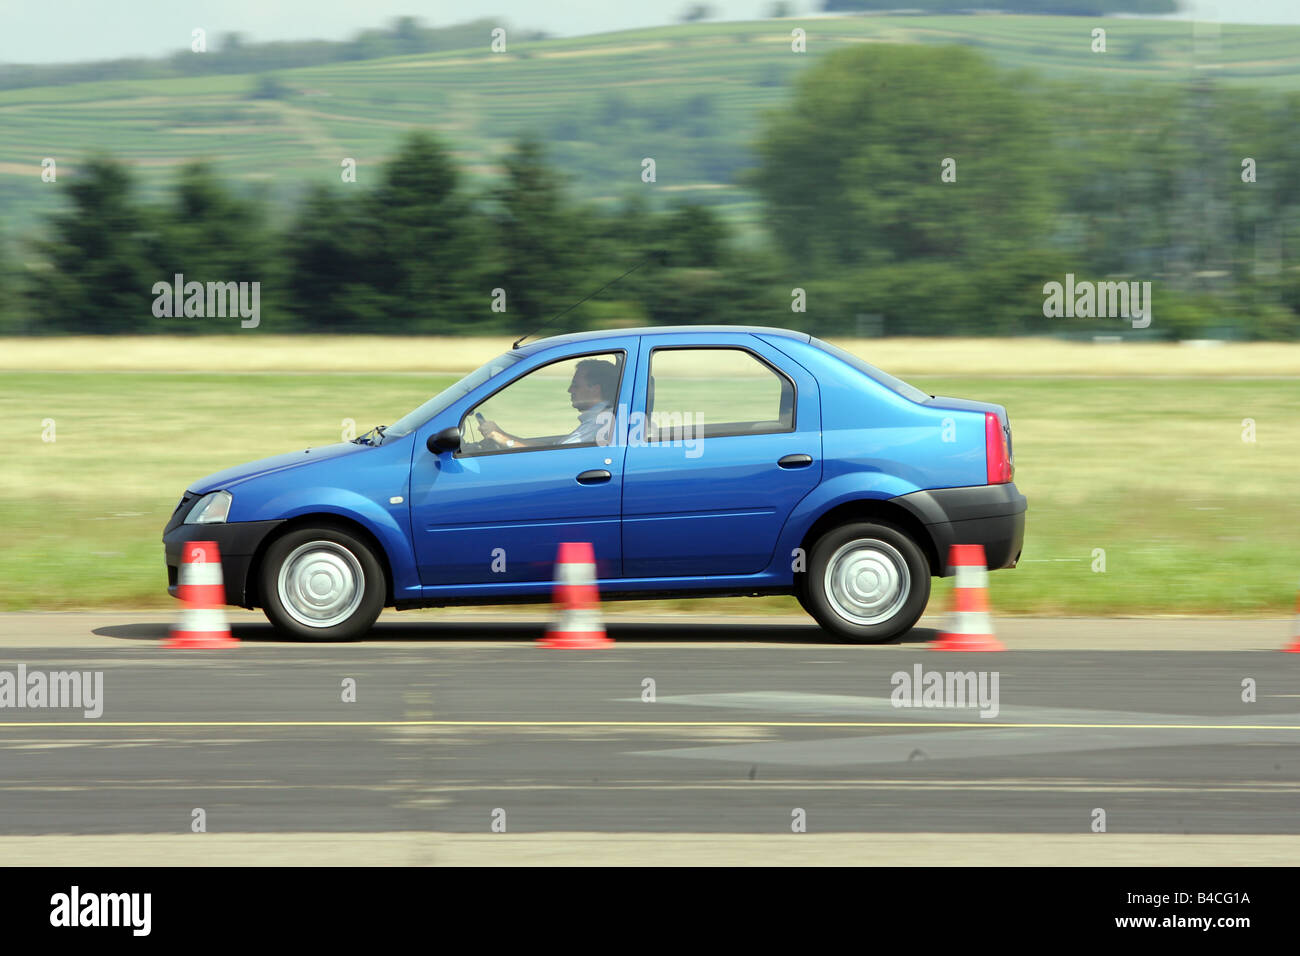 Dacia Logan 1.4 MPI, modèle de l'année 2005-, bleu, Limousine, conduite, side view, test track, Pilonen Banque D'Images